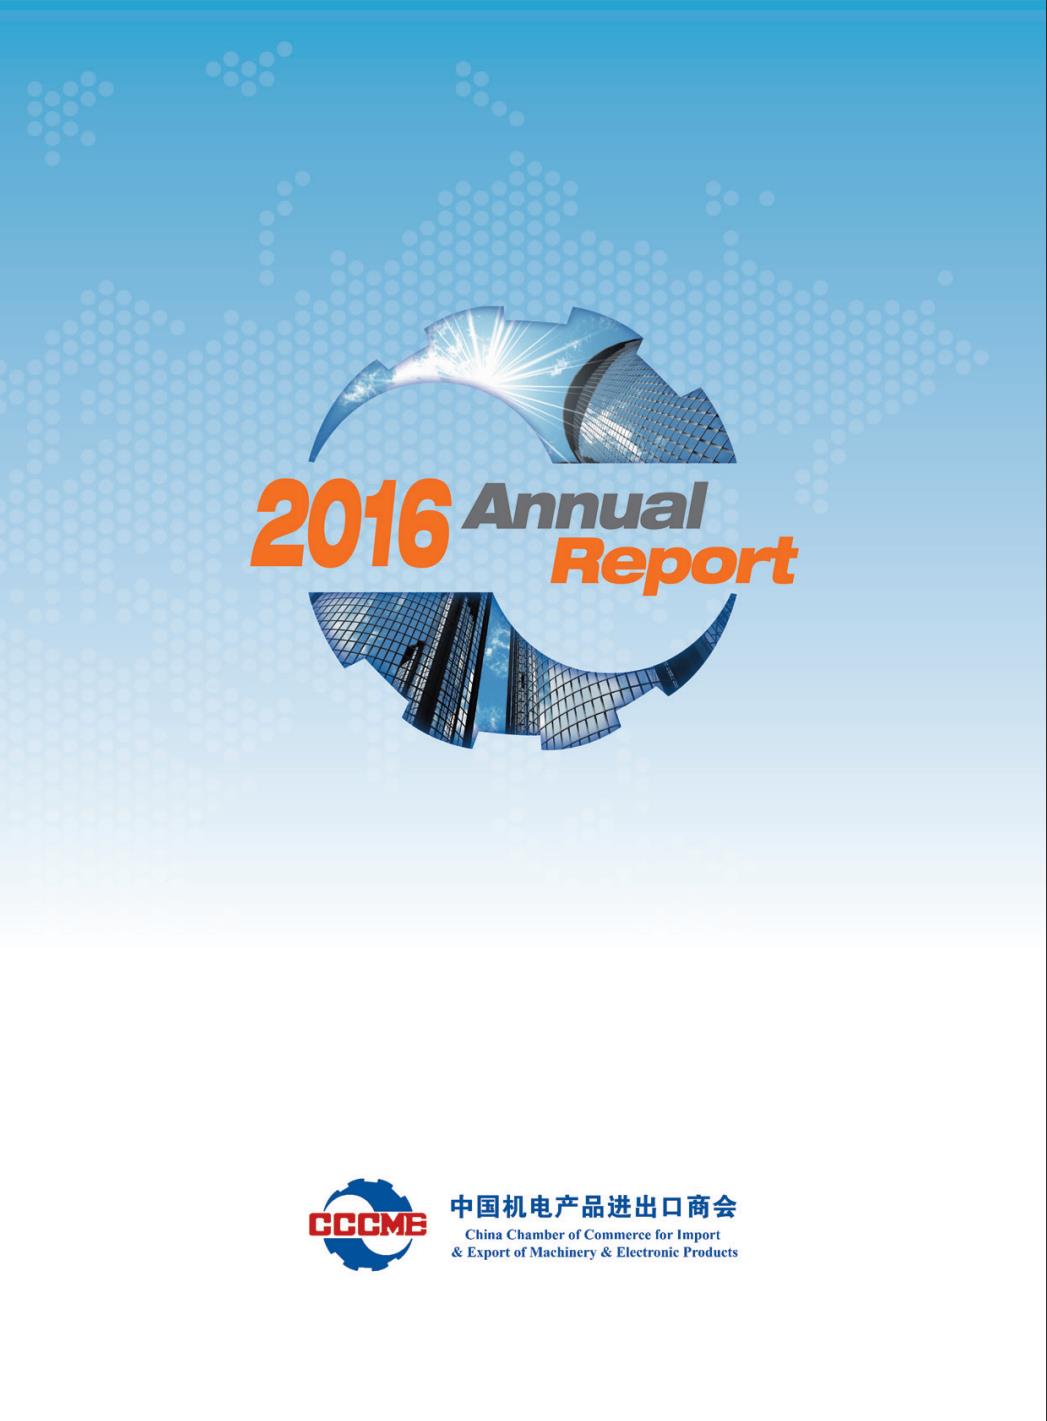 机电商会2016年度报告-英文版